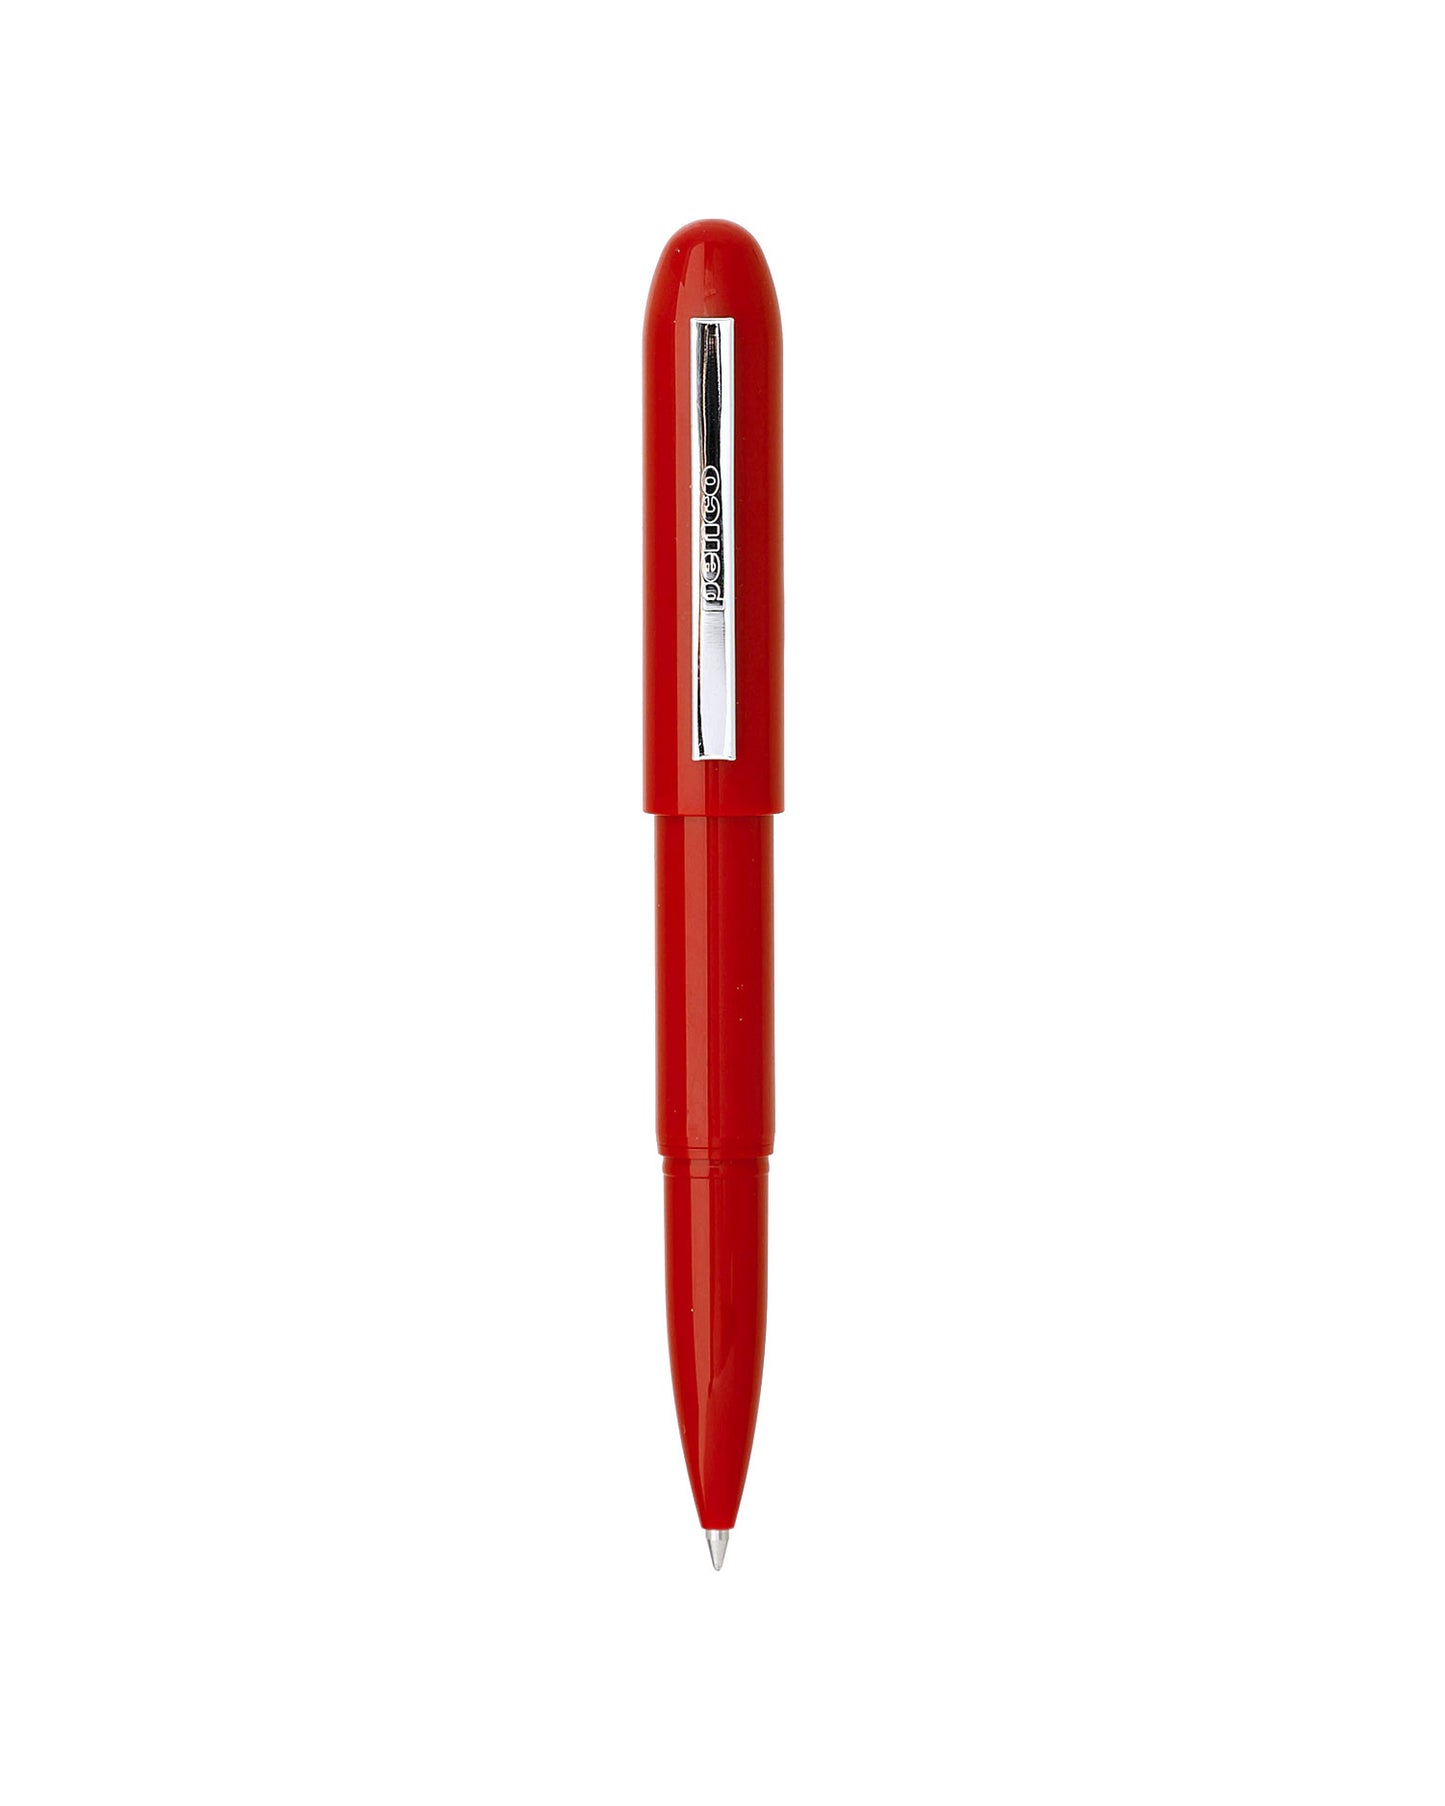 Red bullet pen, plastic, Penco brand